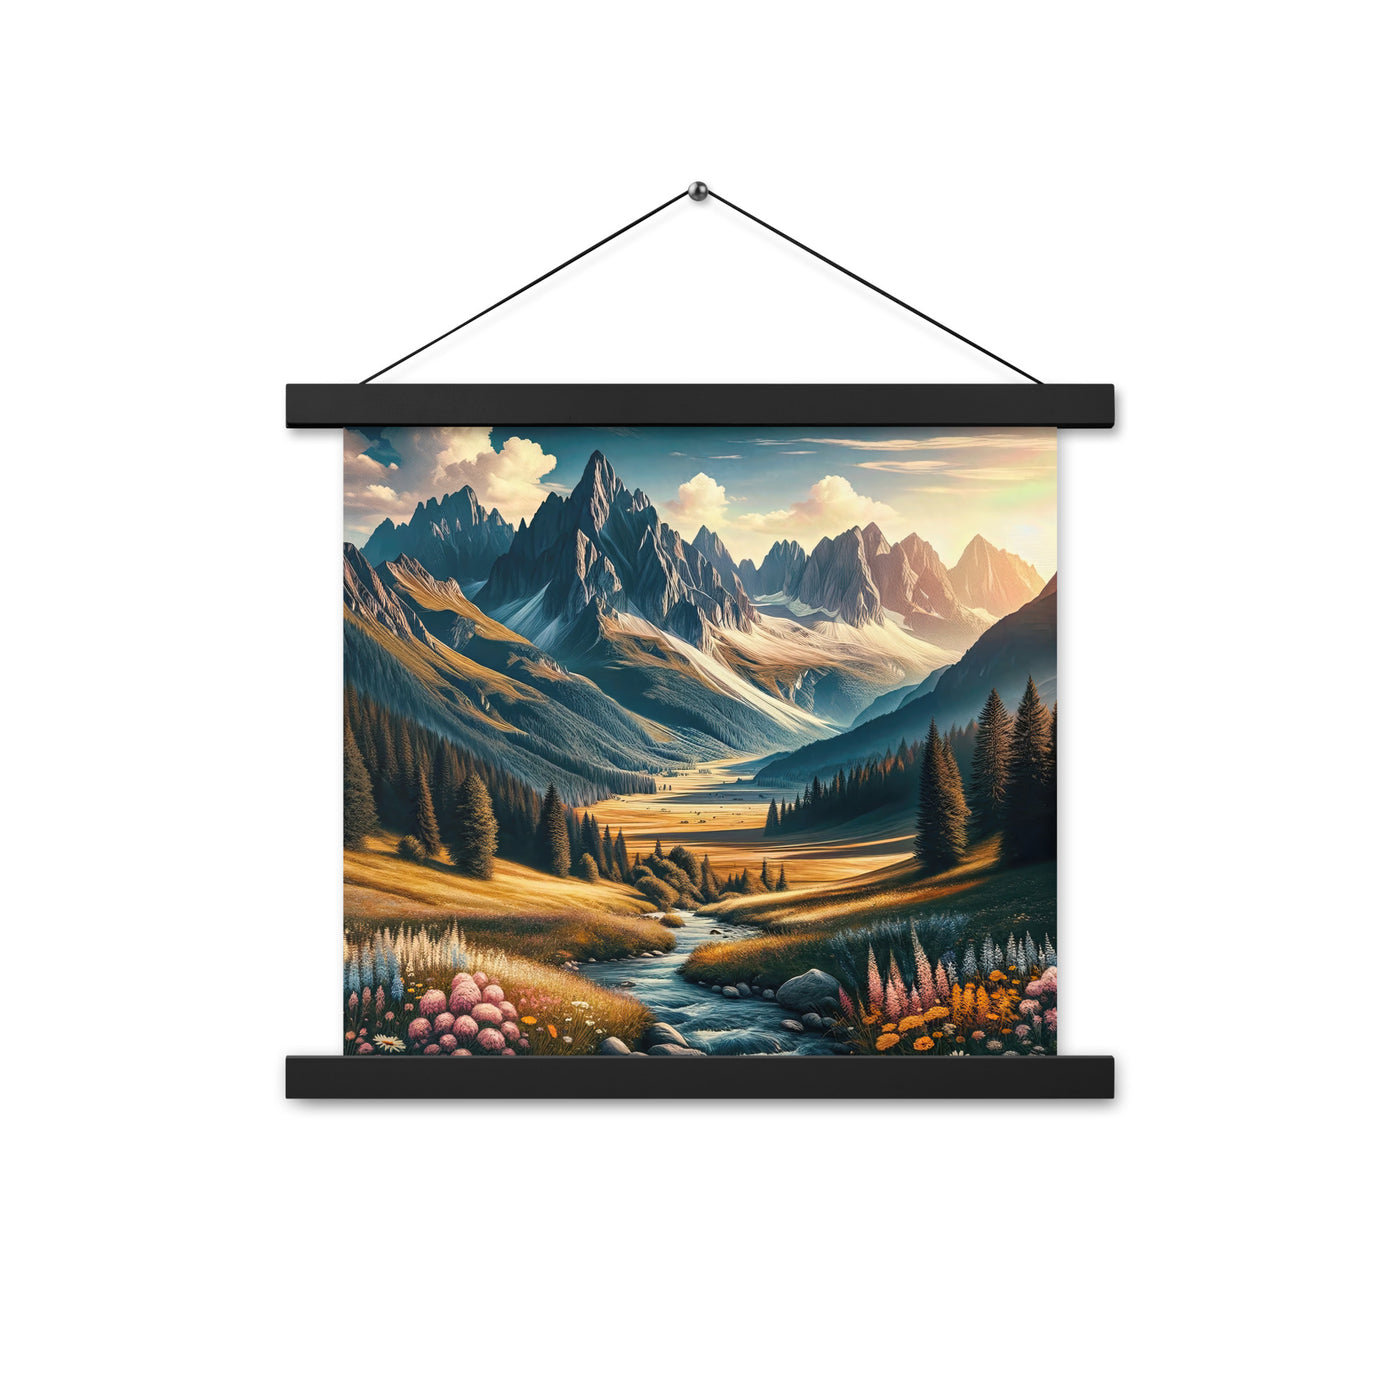 Quadratisches Kunstwerk der Alpen, majestätische Berge unter goldener Sonne - Premium Poster mit Aufhängung berge xxx yyy zzz 35.6 x 35.6 cm